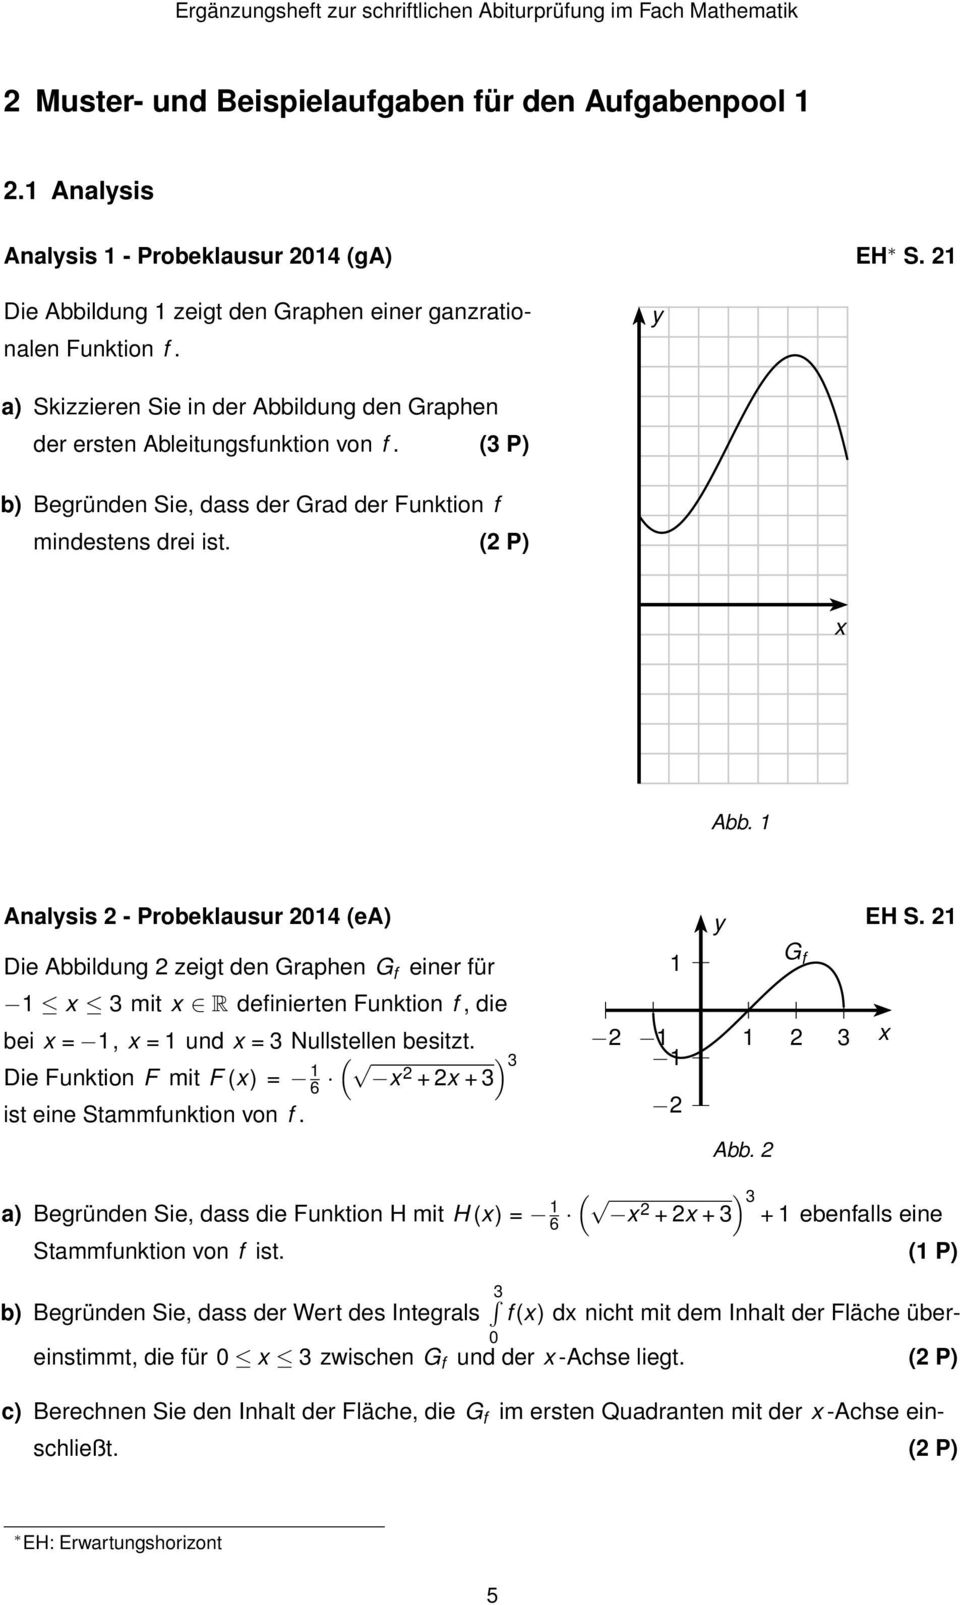 1 Analysis 2 - Probeklausur 2014 (ea) y EH S. 21 Die Abbildung 2 zeigt den Graphen G f einer für 1 1 x 3 mit x R definierten Funktion f, die bei x = 1, x = 1 und x = 3 Nullstellen besitzt.